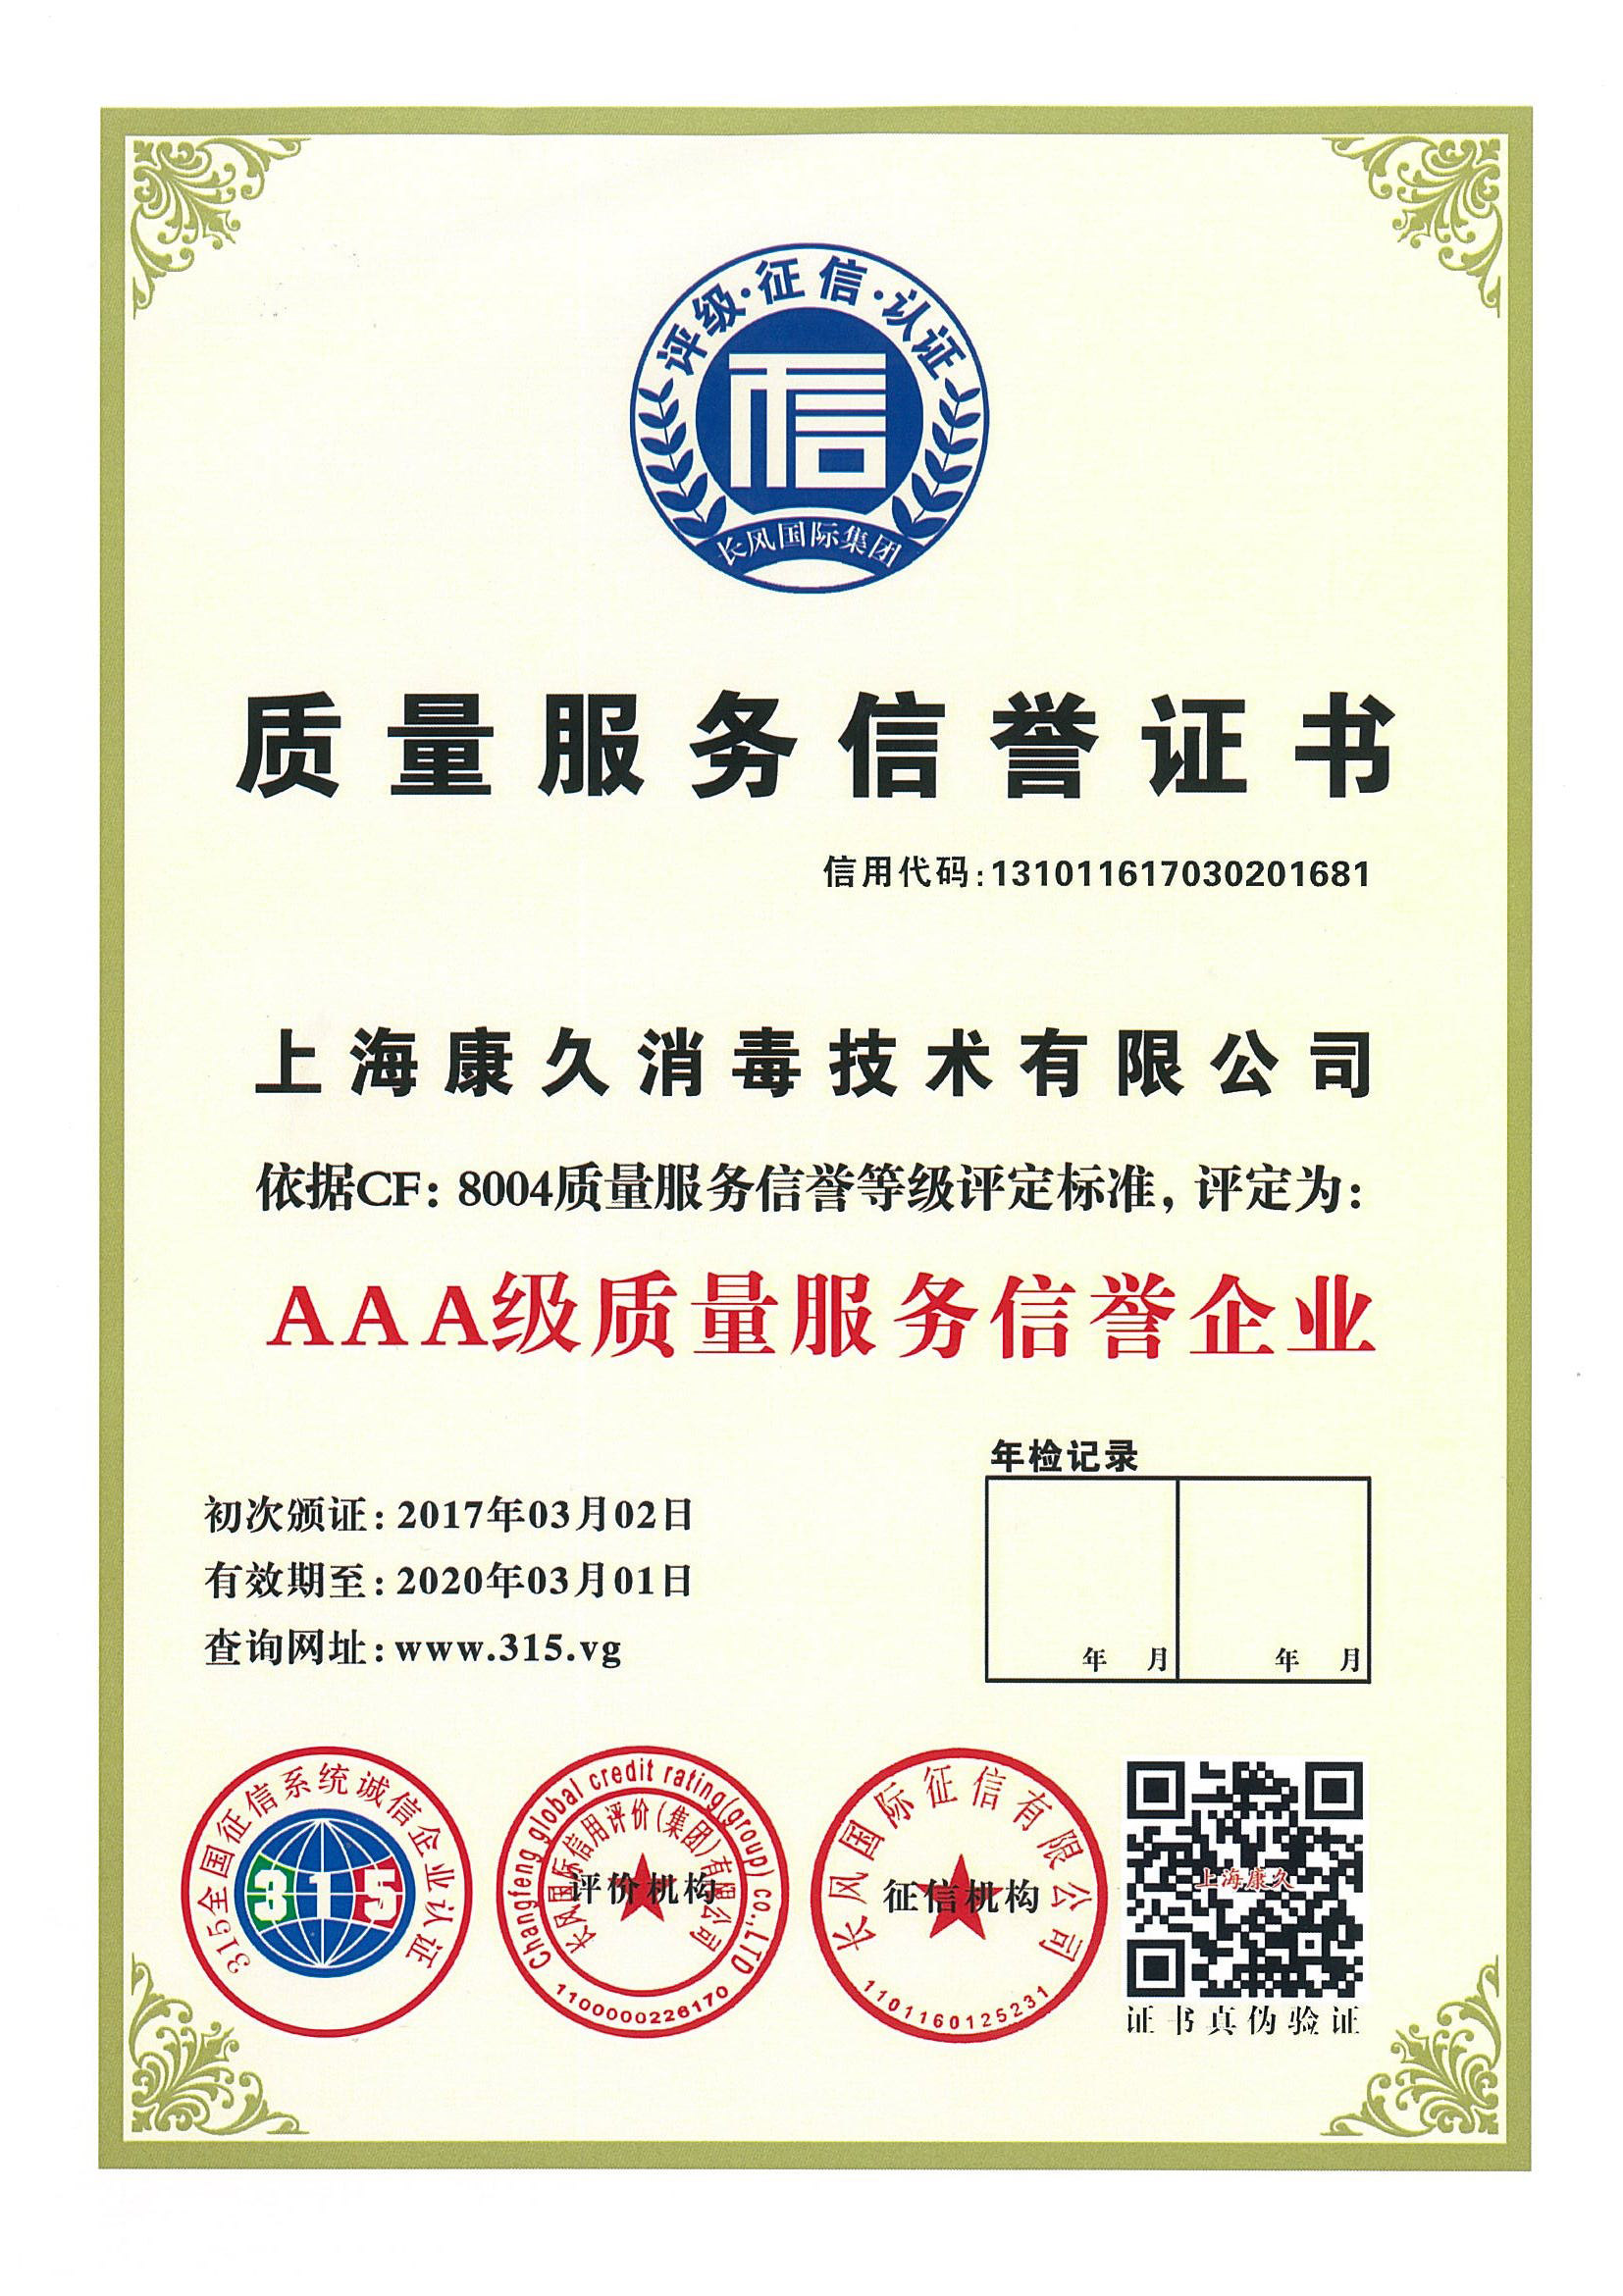 “柳州质量服务信誉证书